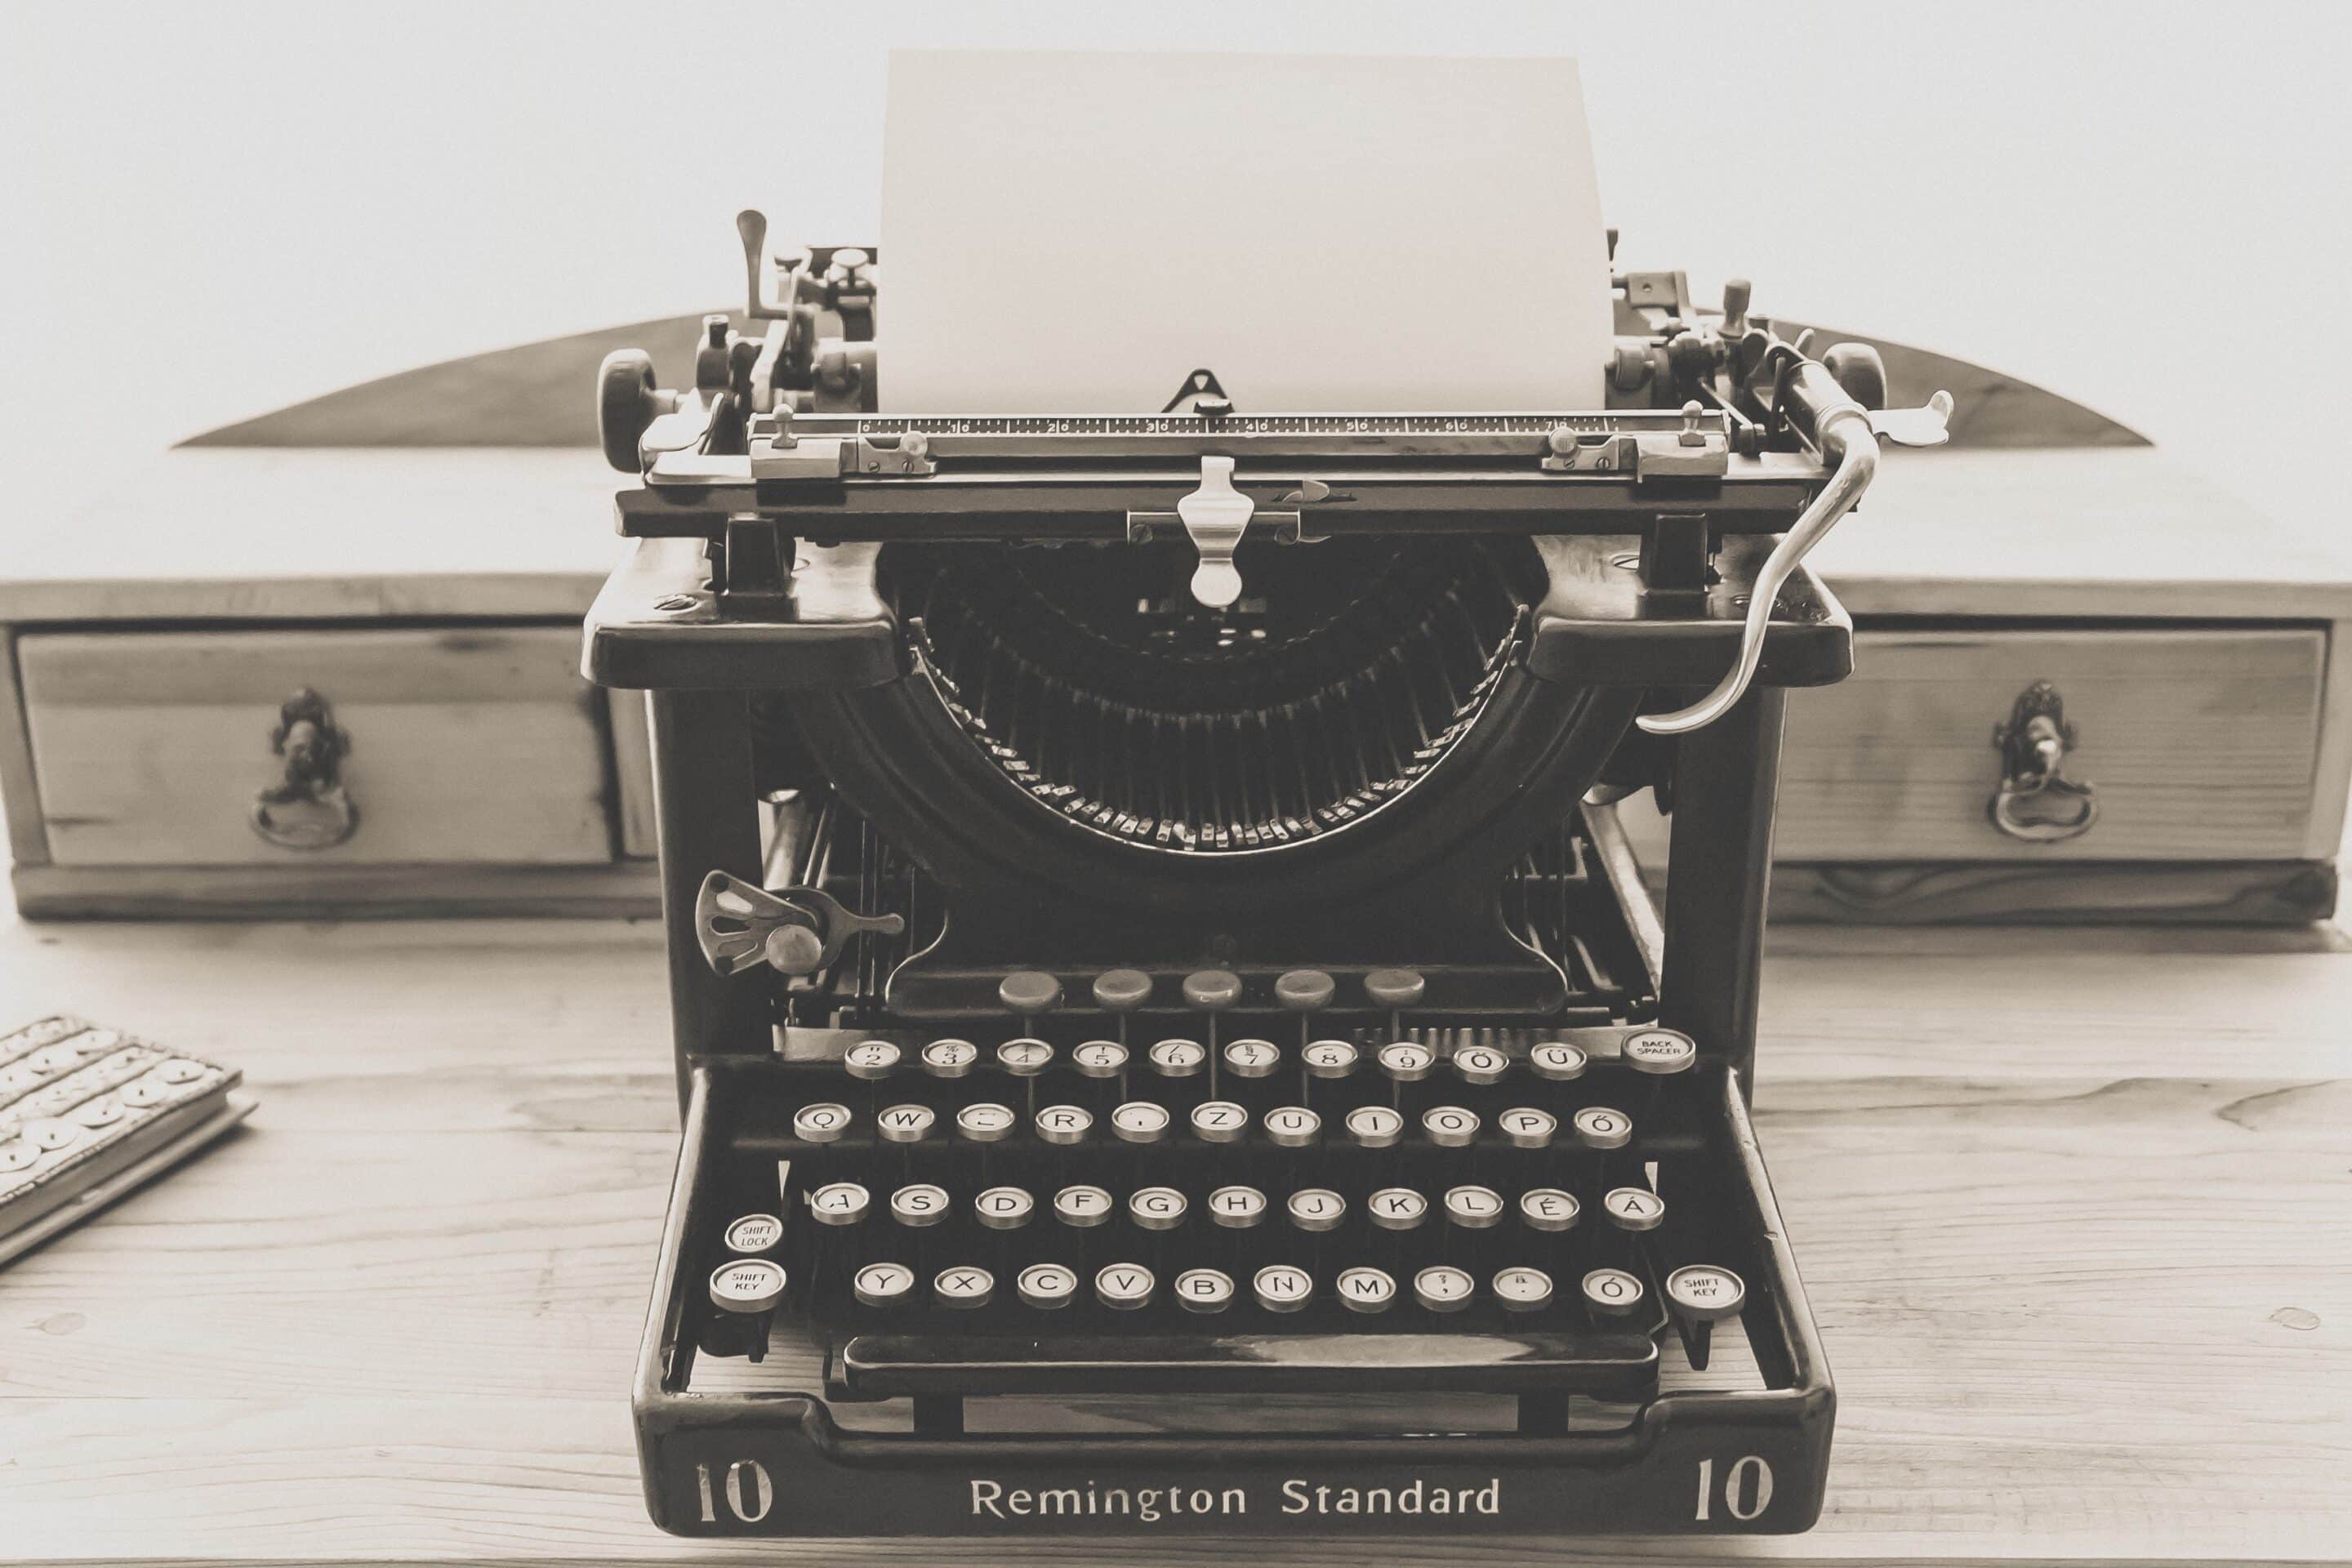 Maquina de escrever antiga (fazendo alusão a escrita da mensagem de cobrança)